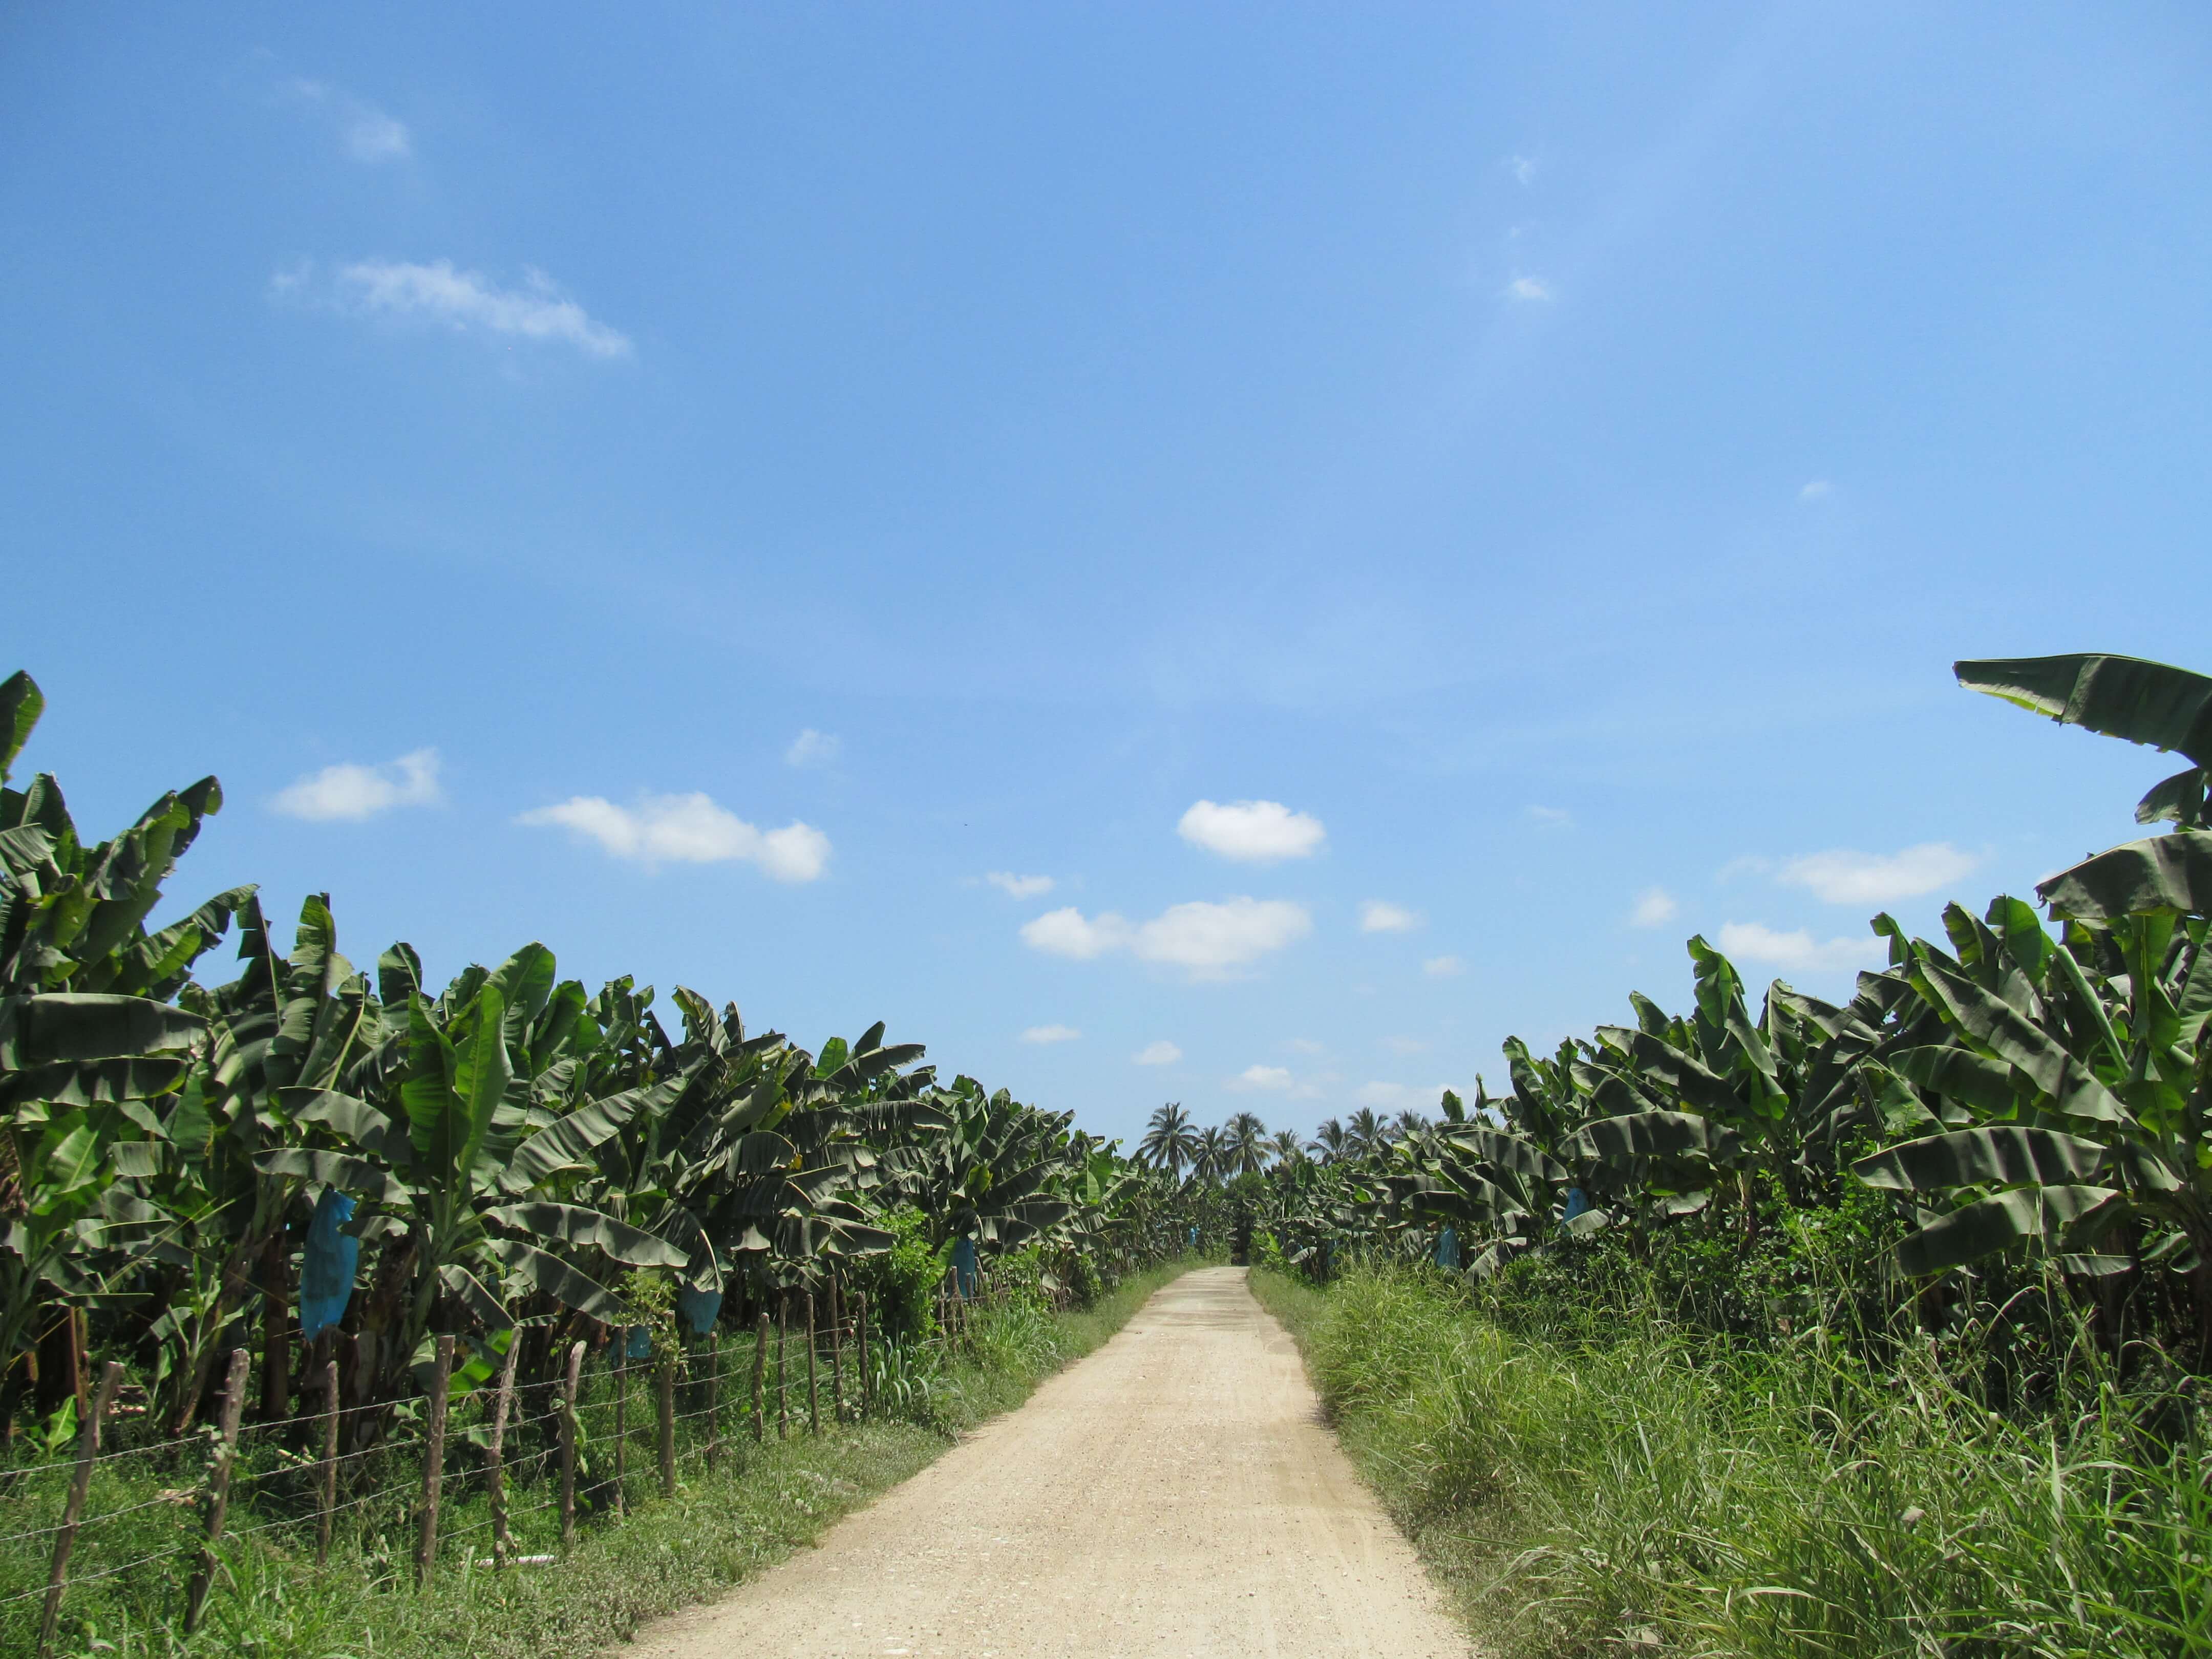 En Zona Bananera hay 10.238 hectáreas sembradas de banano de exportación y 12.160 de palma africana, según el Plan de Desarrollo Municipal.